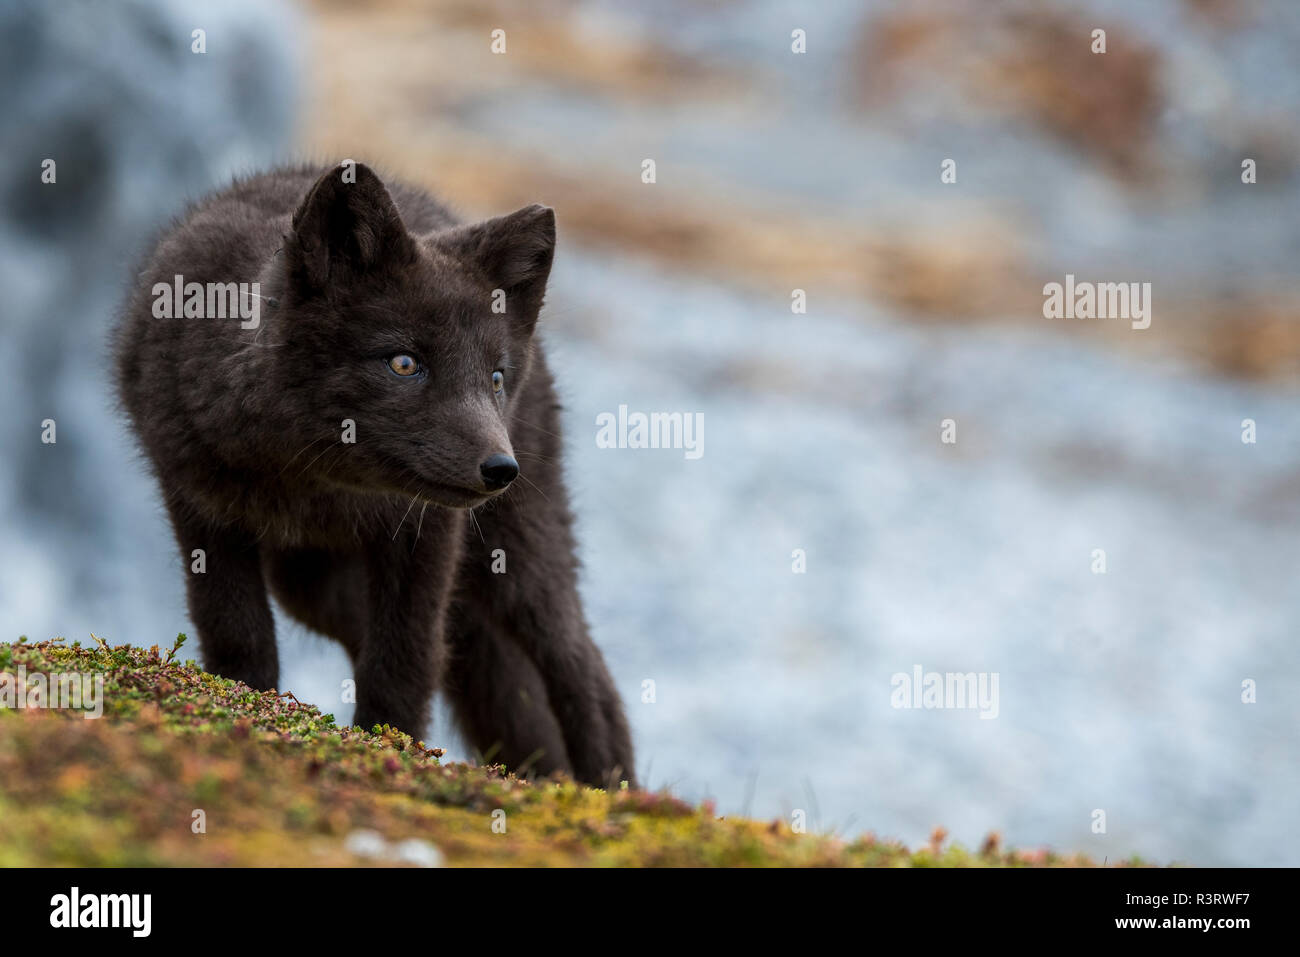 Norway, Svalbard, Spitsbergen. Hornsund, Gnalodden, arctic fox (Vulpes lagapus) with darker 'blue morph' coloring. Stock Photo